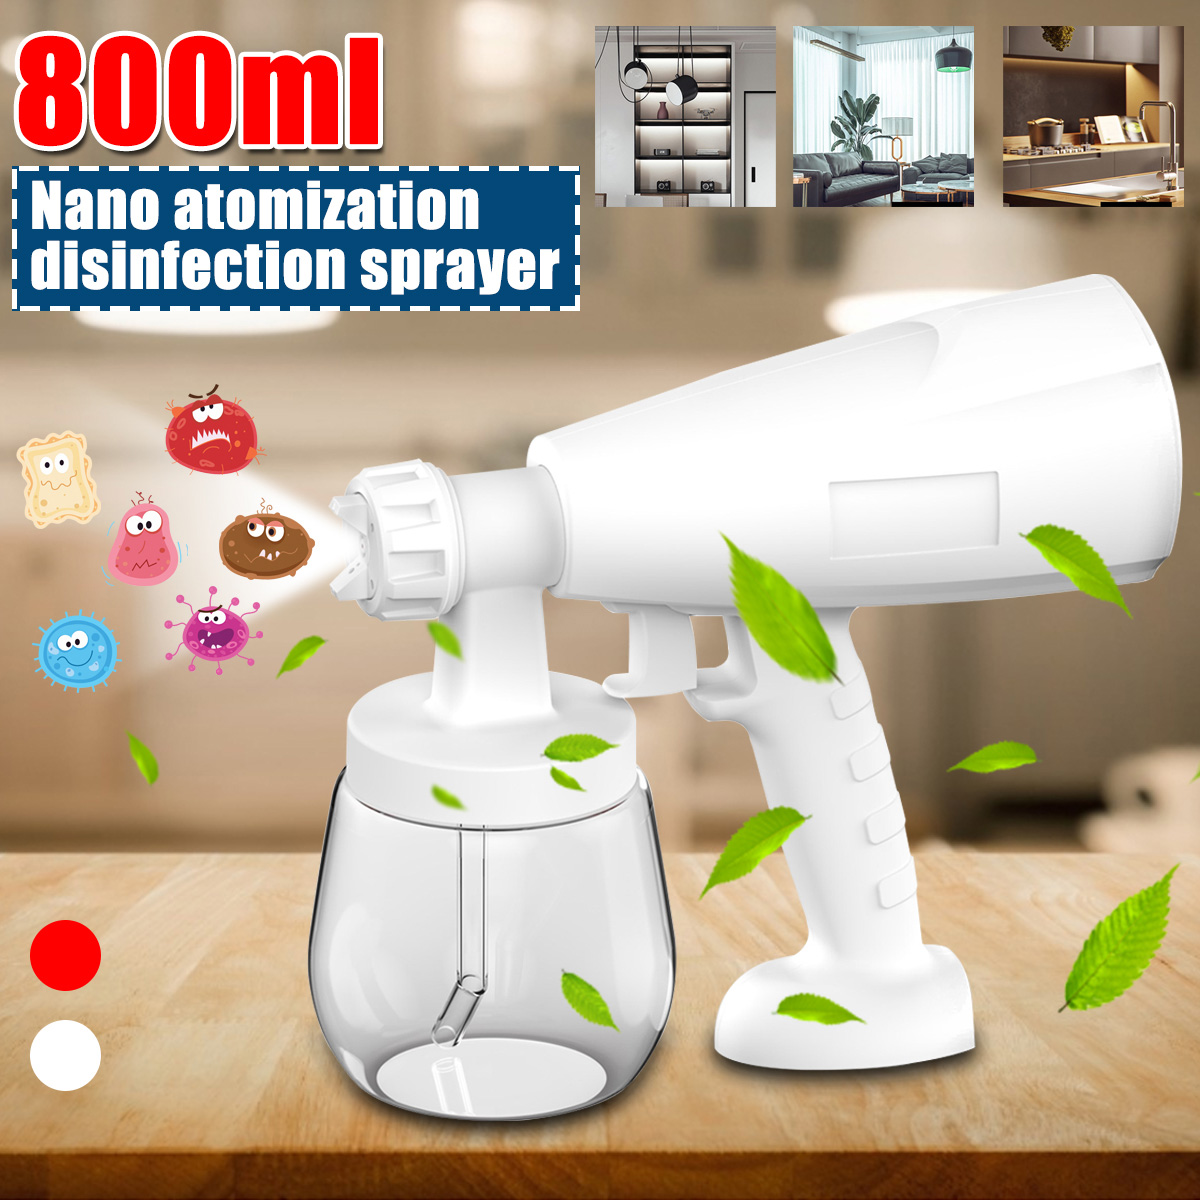 110V-220V-800ML-Portable-Disinfection-Nano-Sprayer-Guns-Fogger-Atomization-Machine-1760107-1